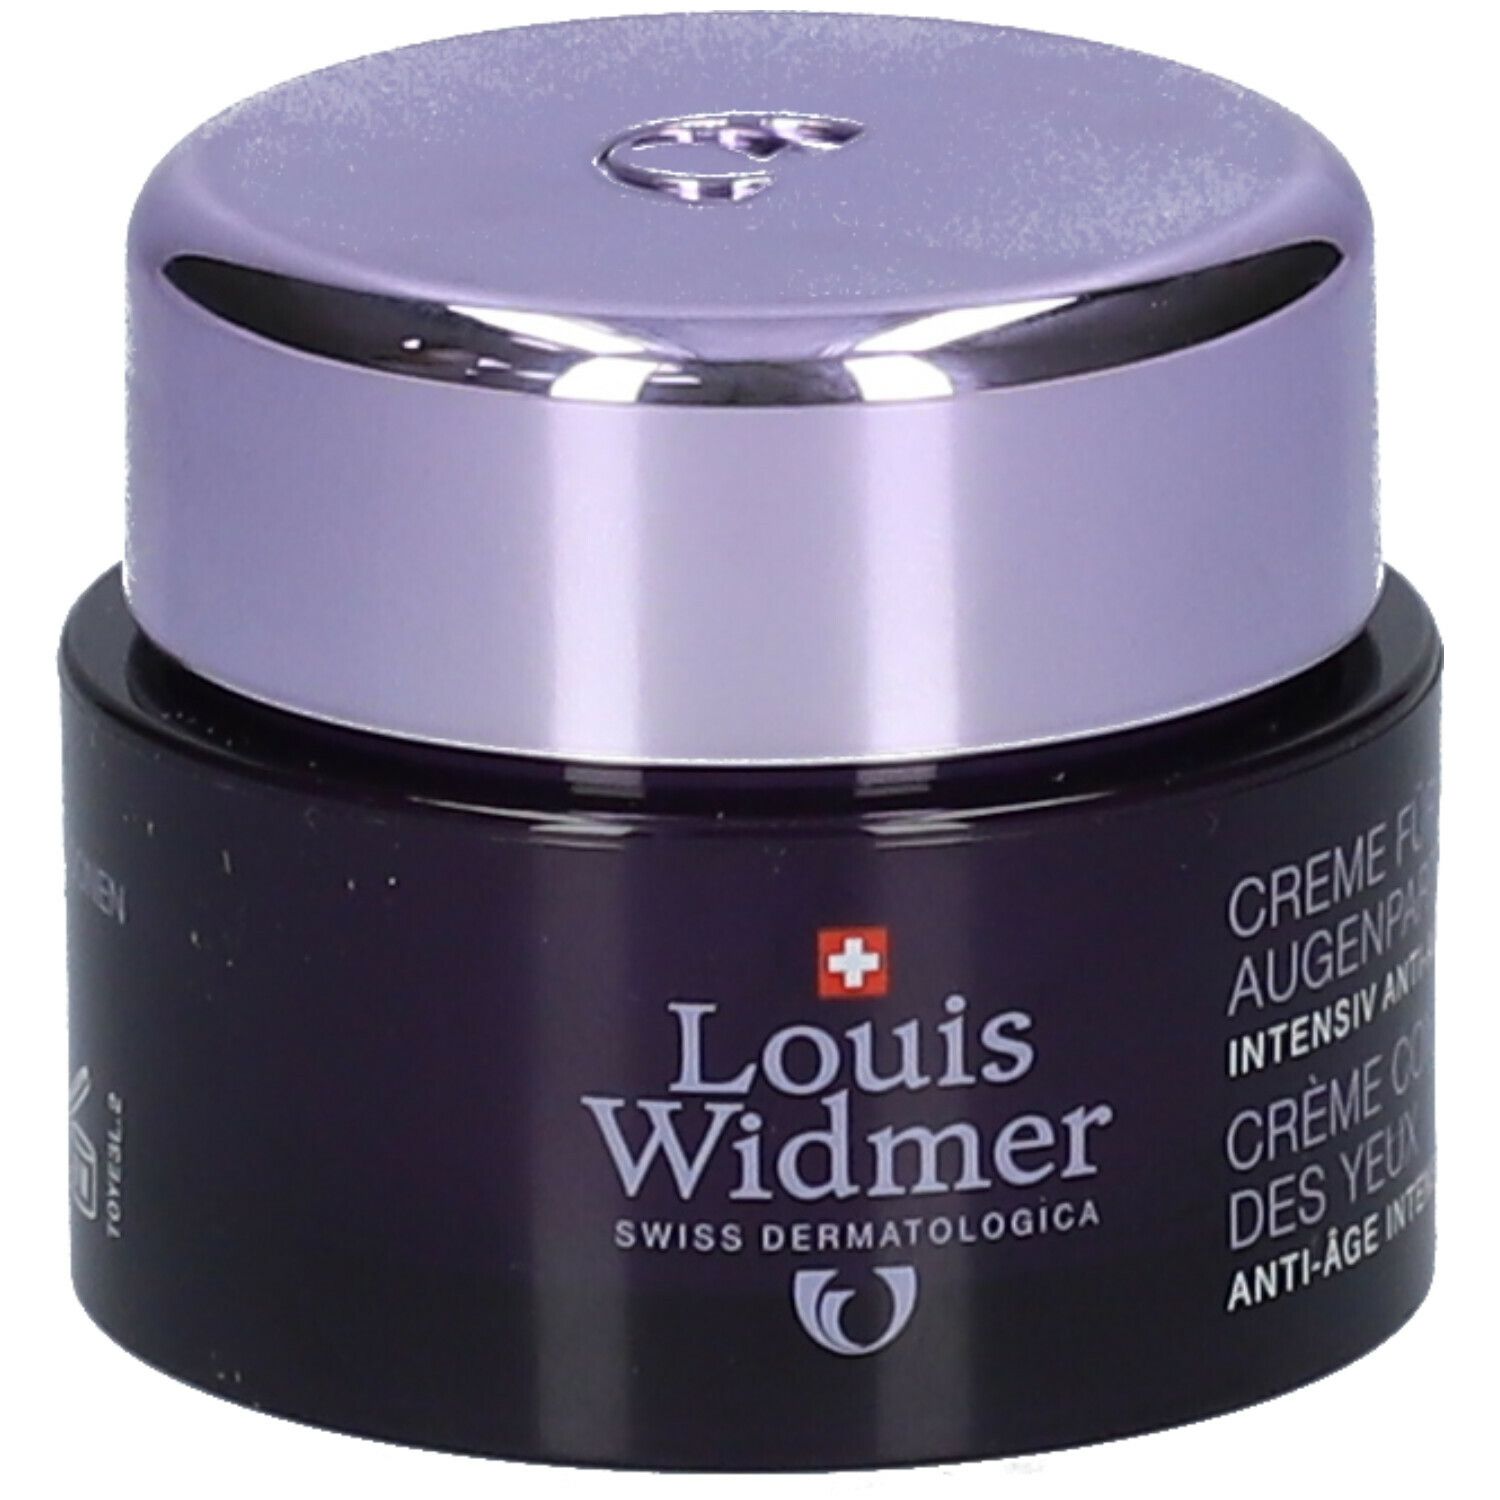 Louis Widmer Creme für die Augenpartie leicht parfümiert